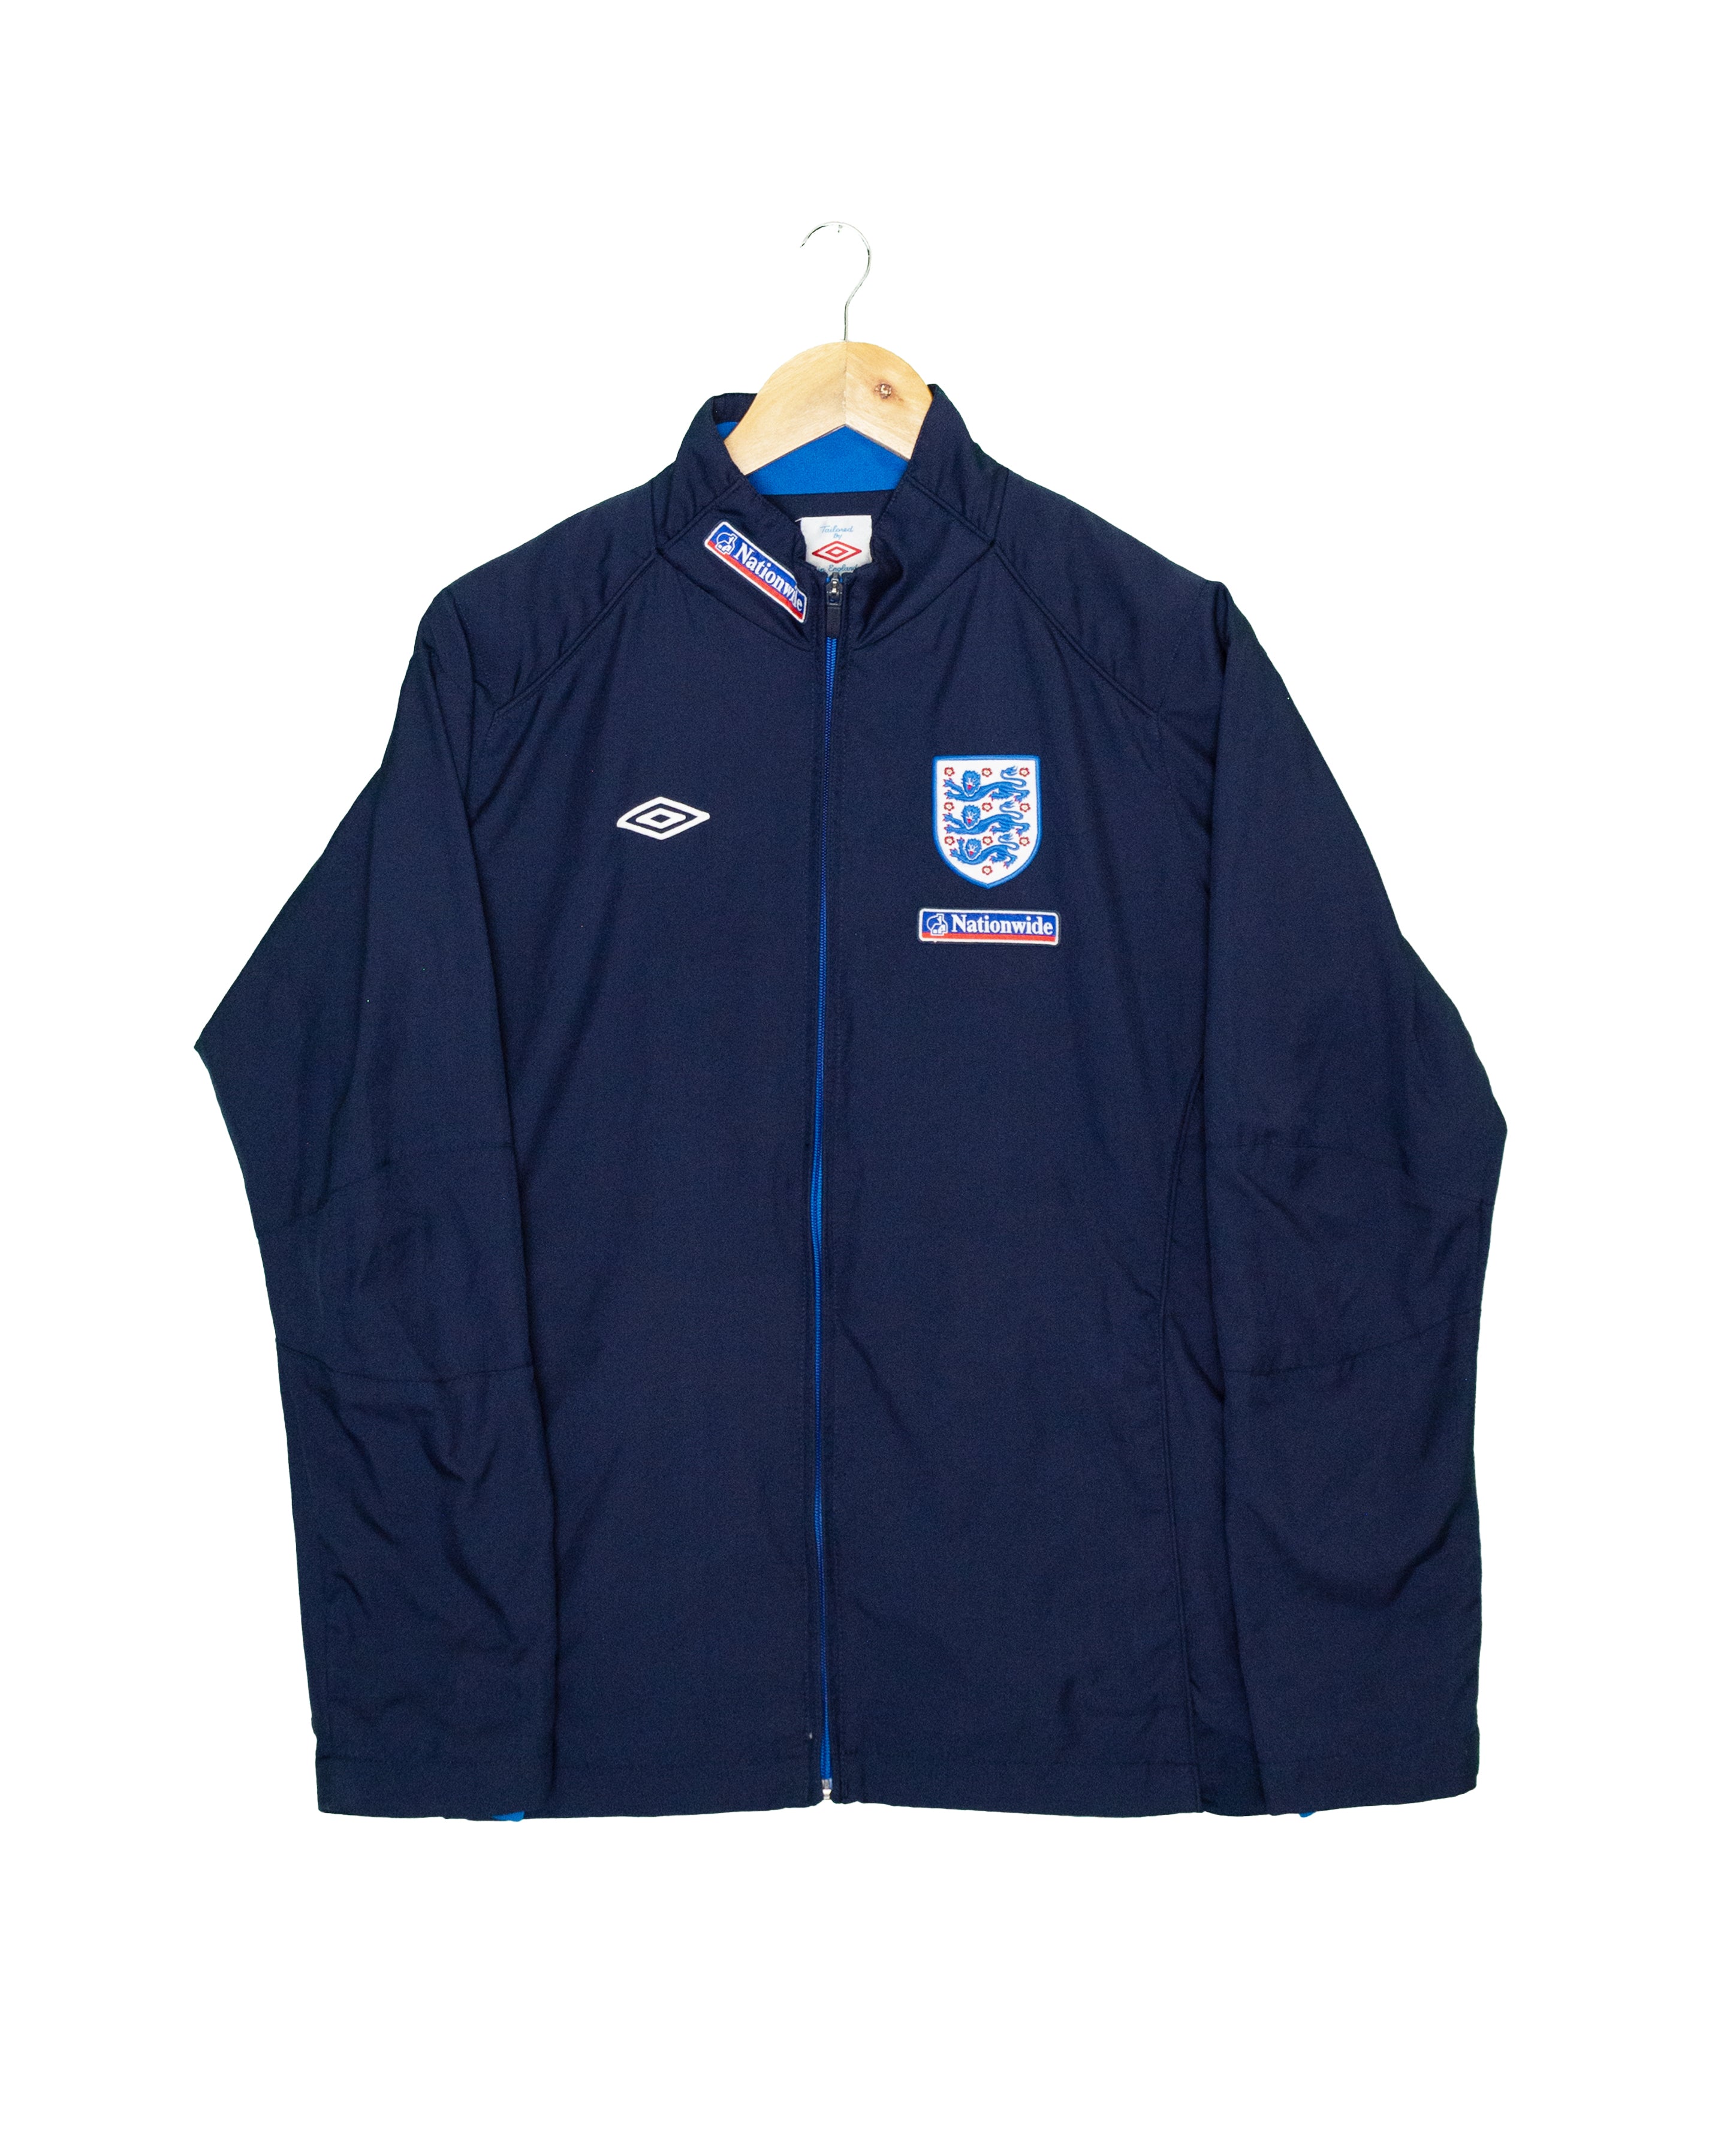 England Training Jacket - S - #1891